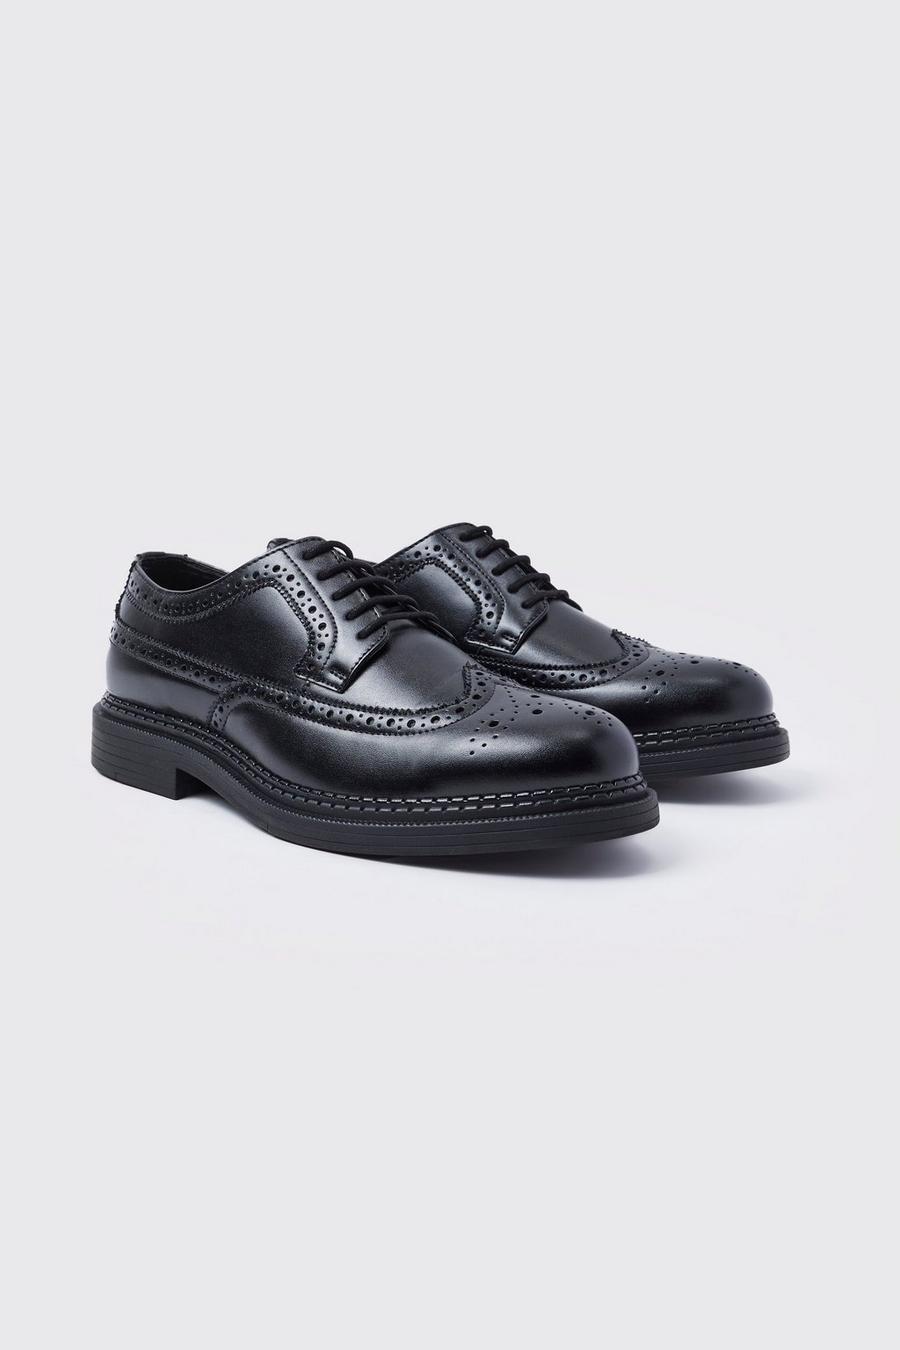 Chaussures derbies classiques en simili, Black